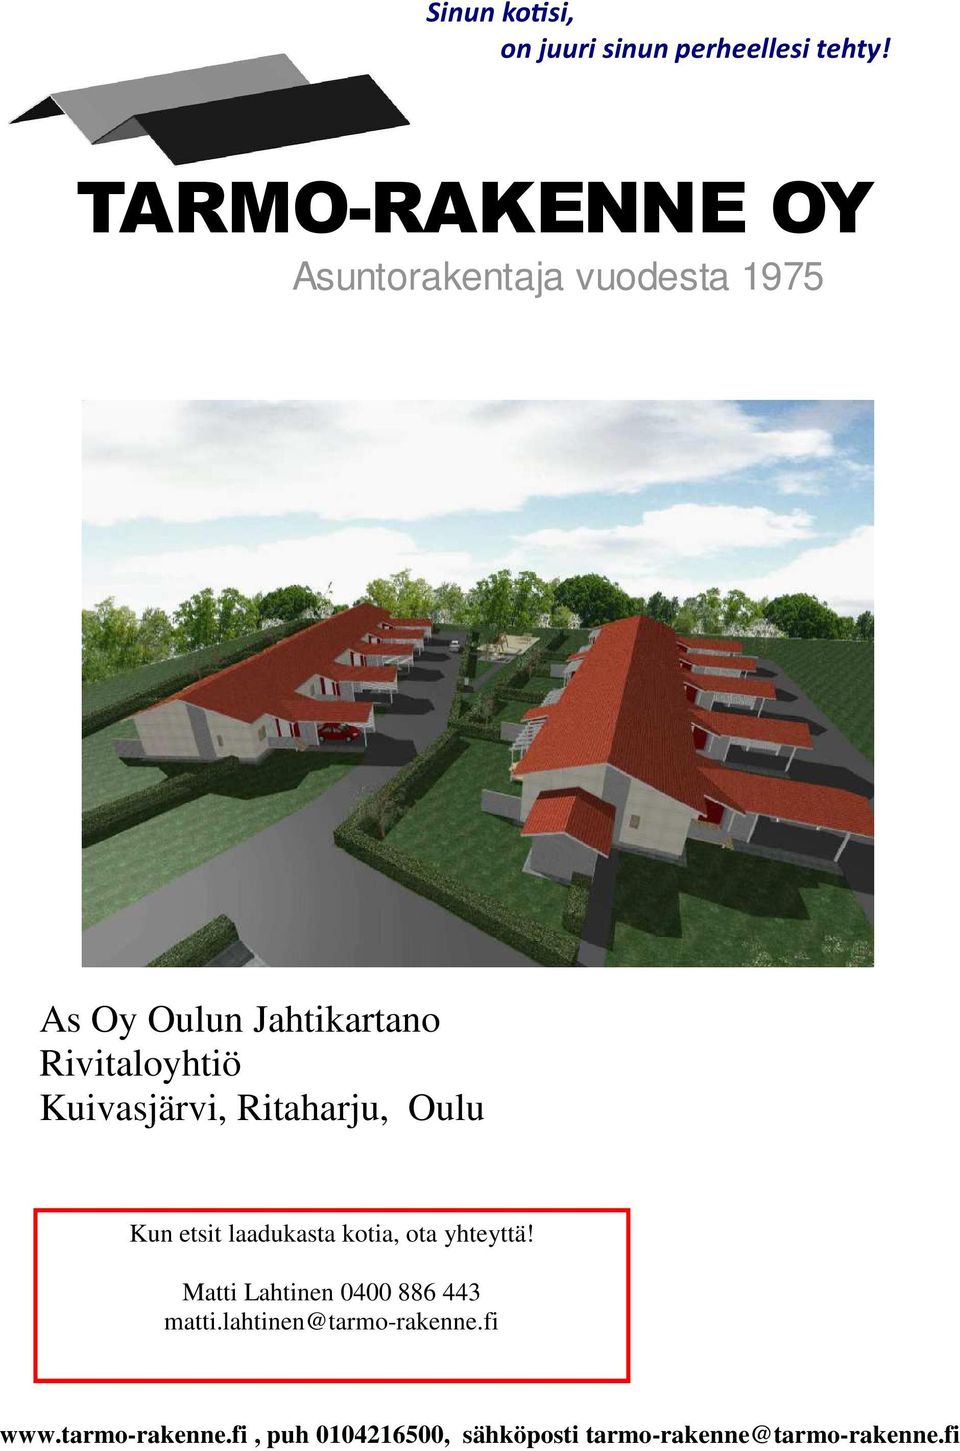 Kuivasjärvi, Ritaharju, Oulu Kun etsit laadukasta kotia, ota yhteyttä!